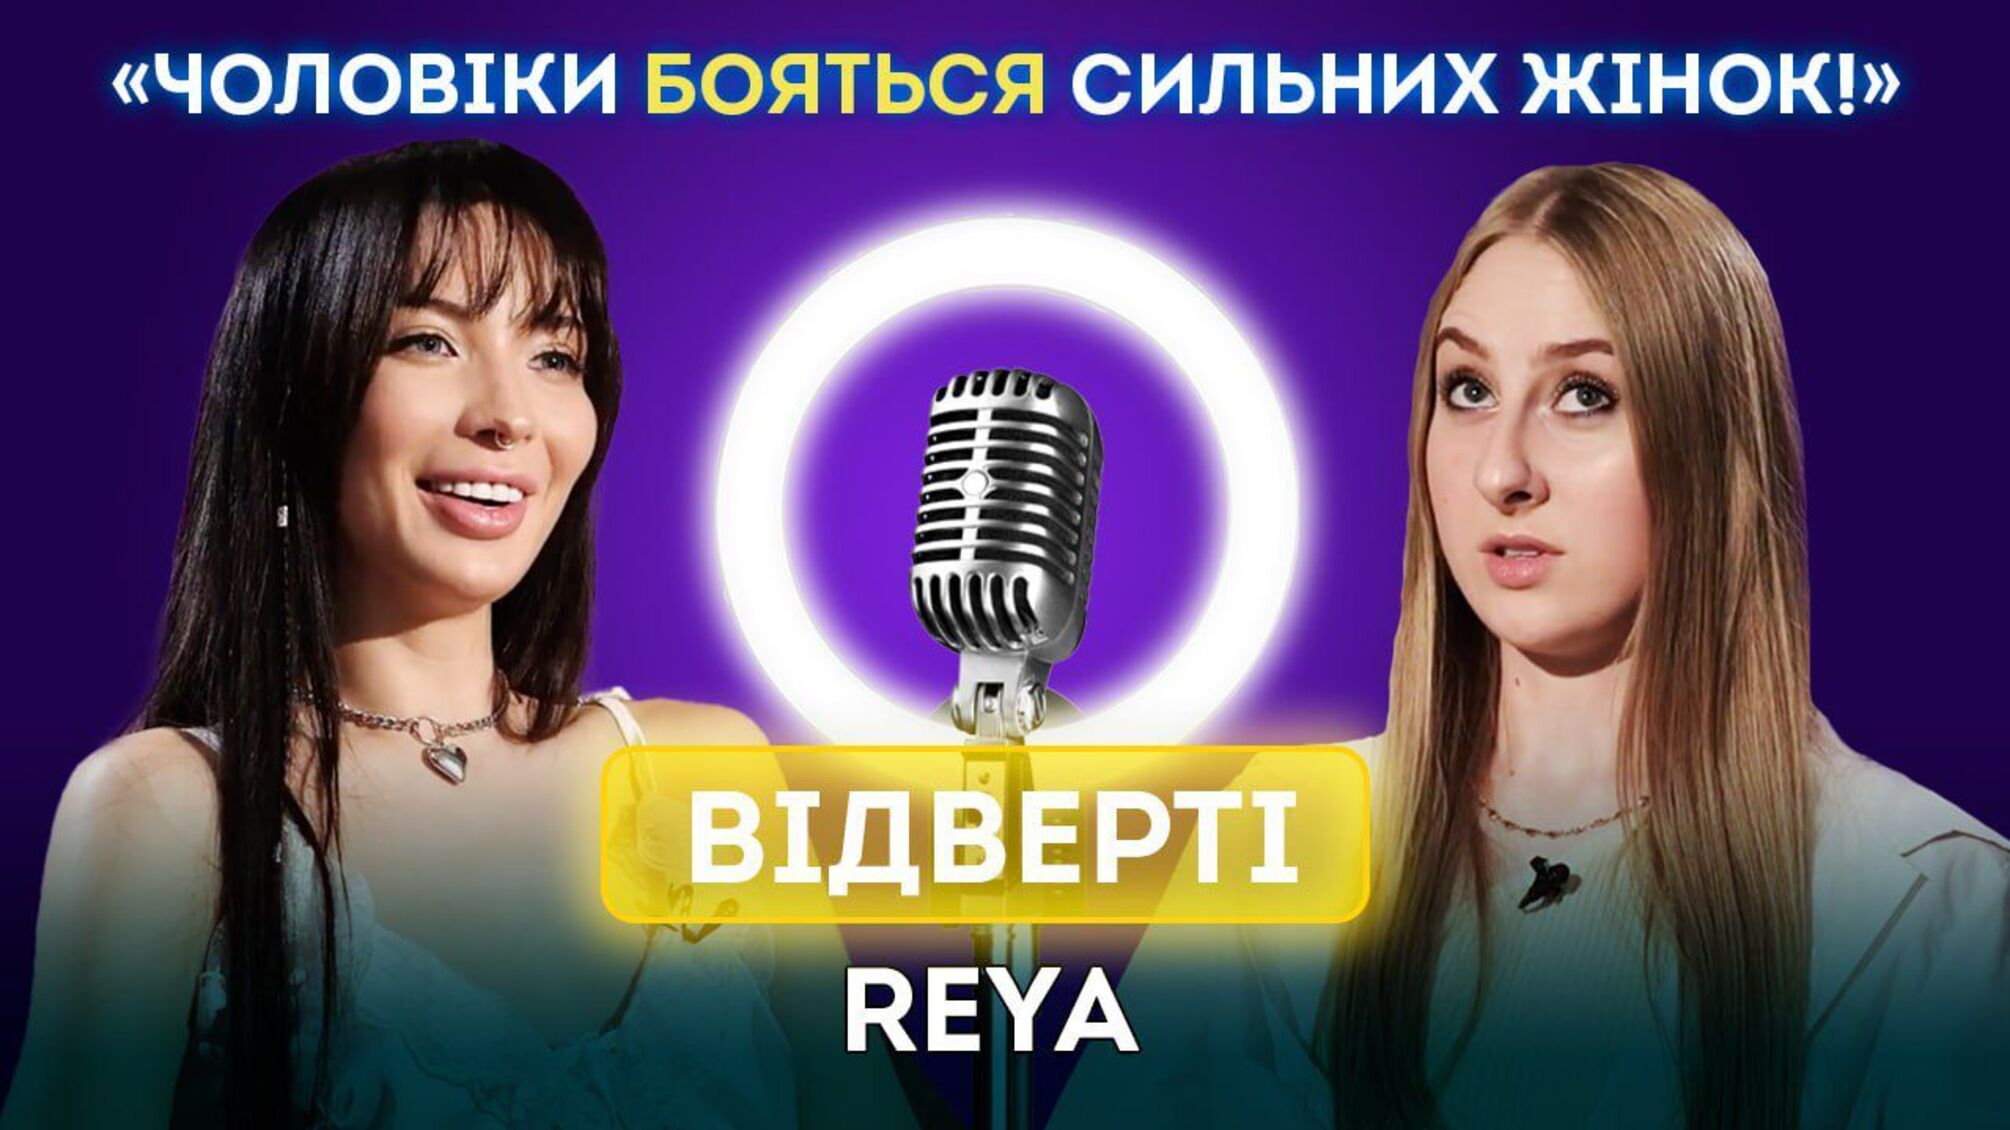 Артистка REYA — об изменах, жестоком буллинге и жизни в Харькове: эксклюзивное интервью для CK Life (видео)